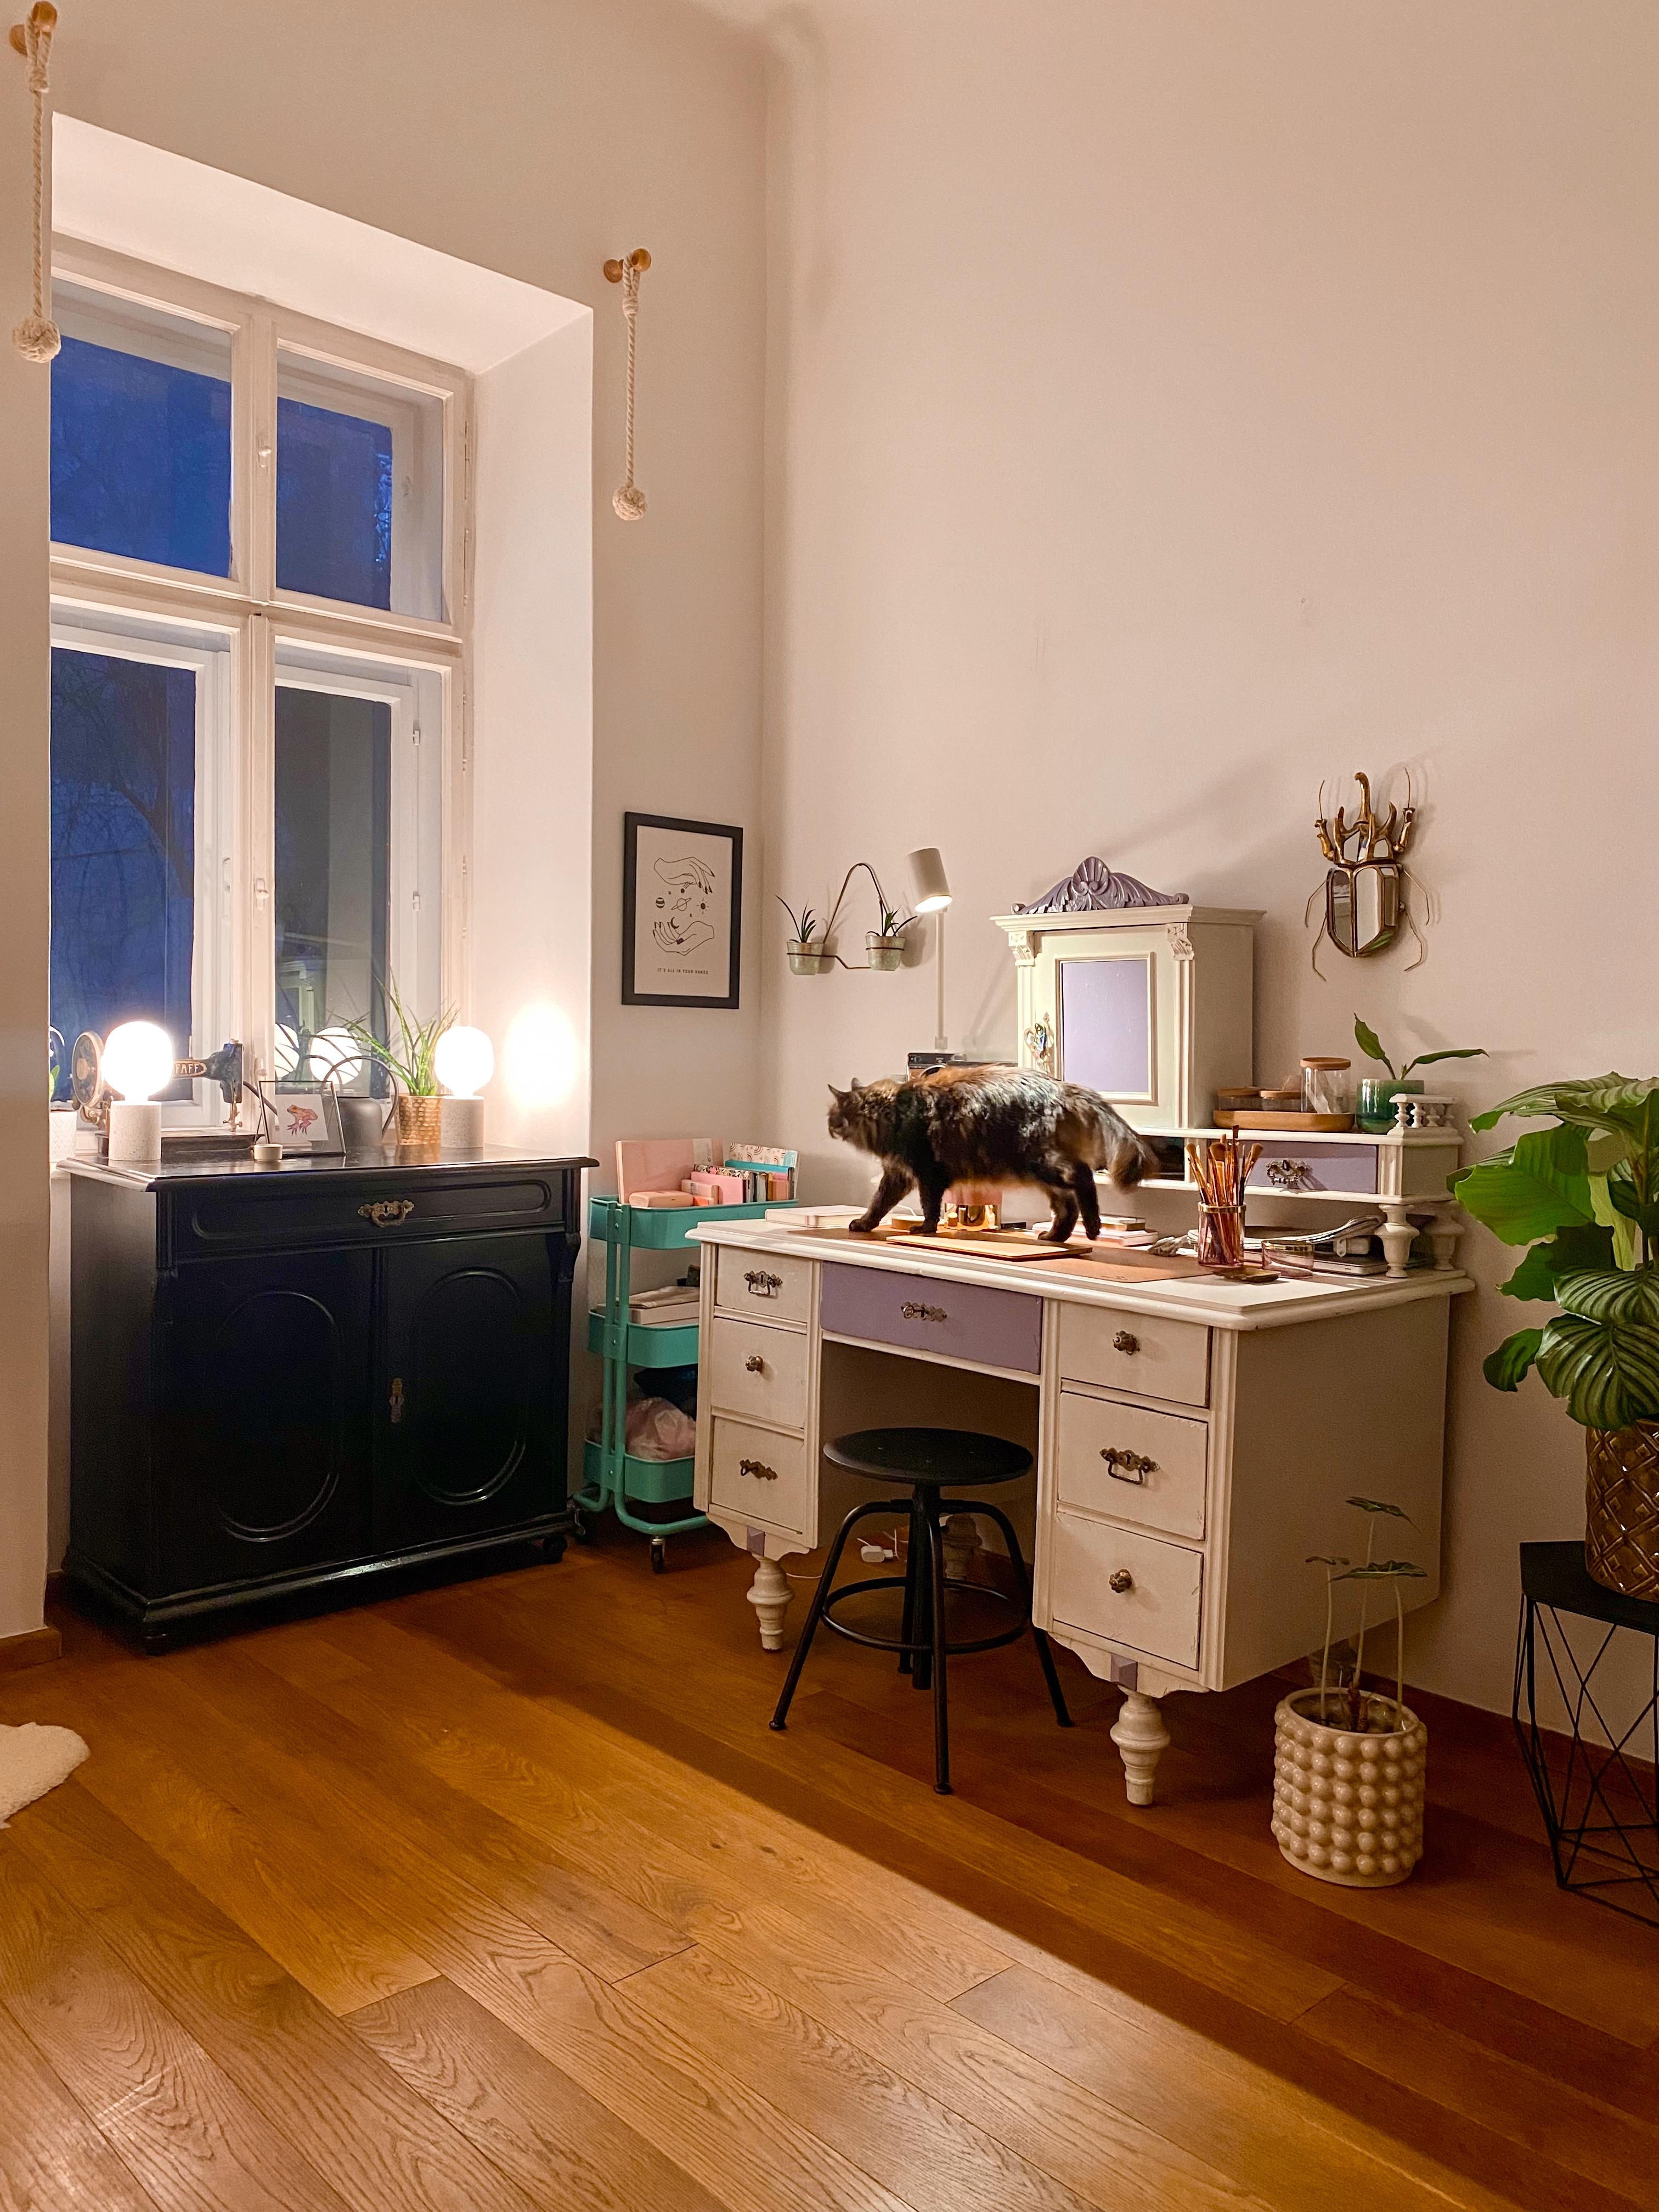 Katzen und alte Möbel, zwei meiner großen Leidenschaften, noch besser in Kombination! 🐈‍⬛

#Wohnzimmer #Katze #schreibtisch #licht #vintage #abendstimmung